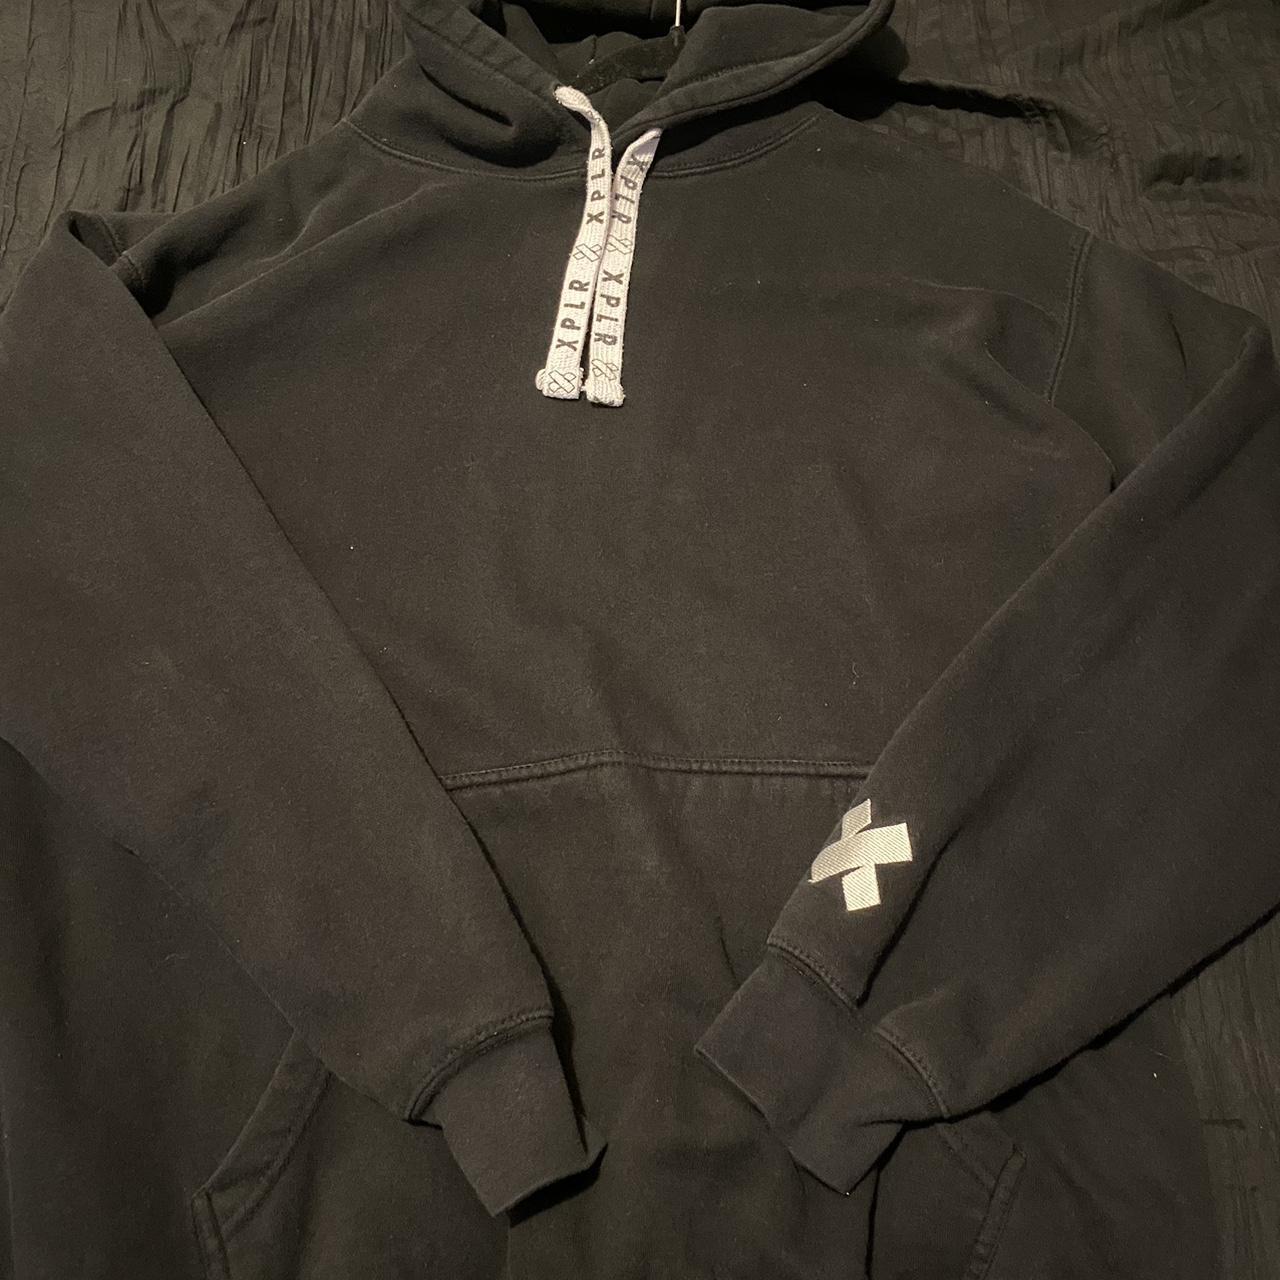 Black XPLR sam and colby hoodie - Depop